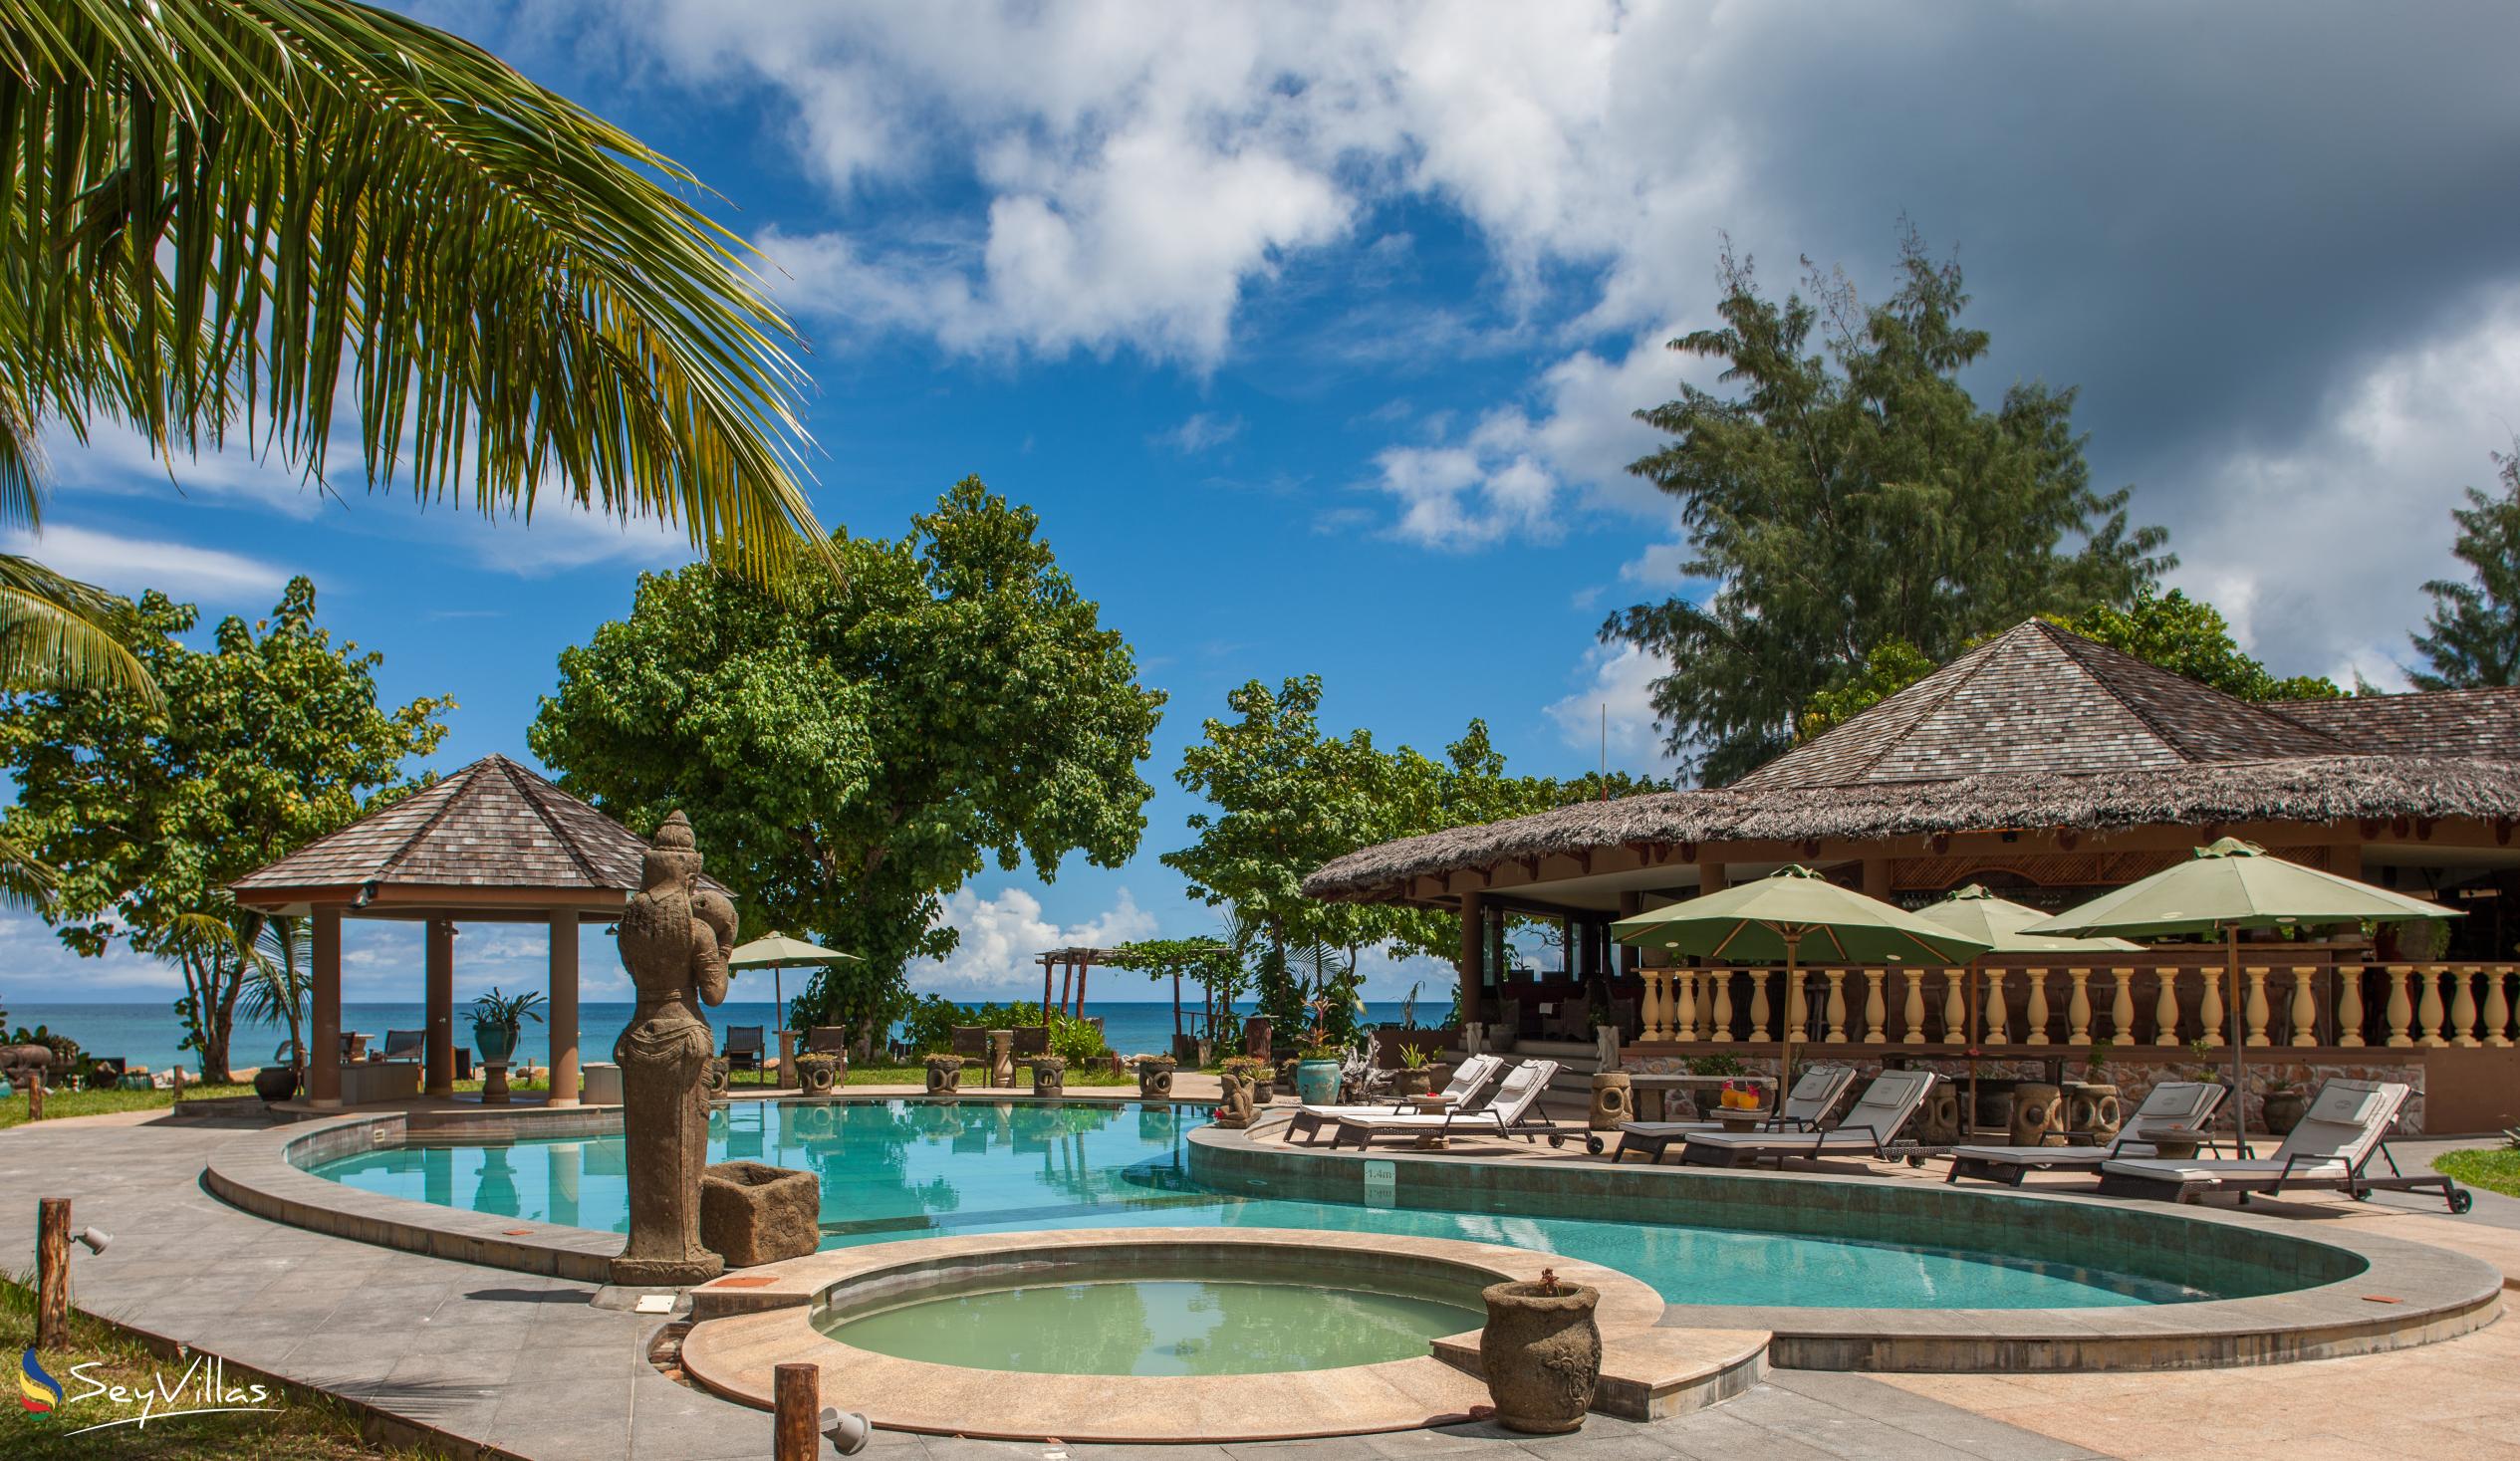 Foto 4: Castello Beach Hotel - Aussenbereich - Praslin (Seychellen)